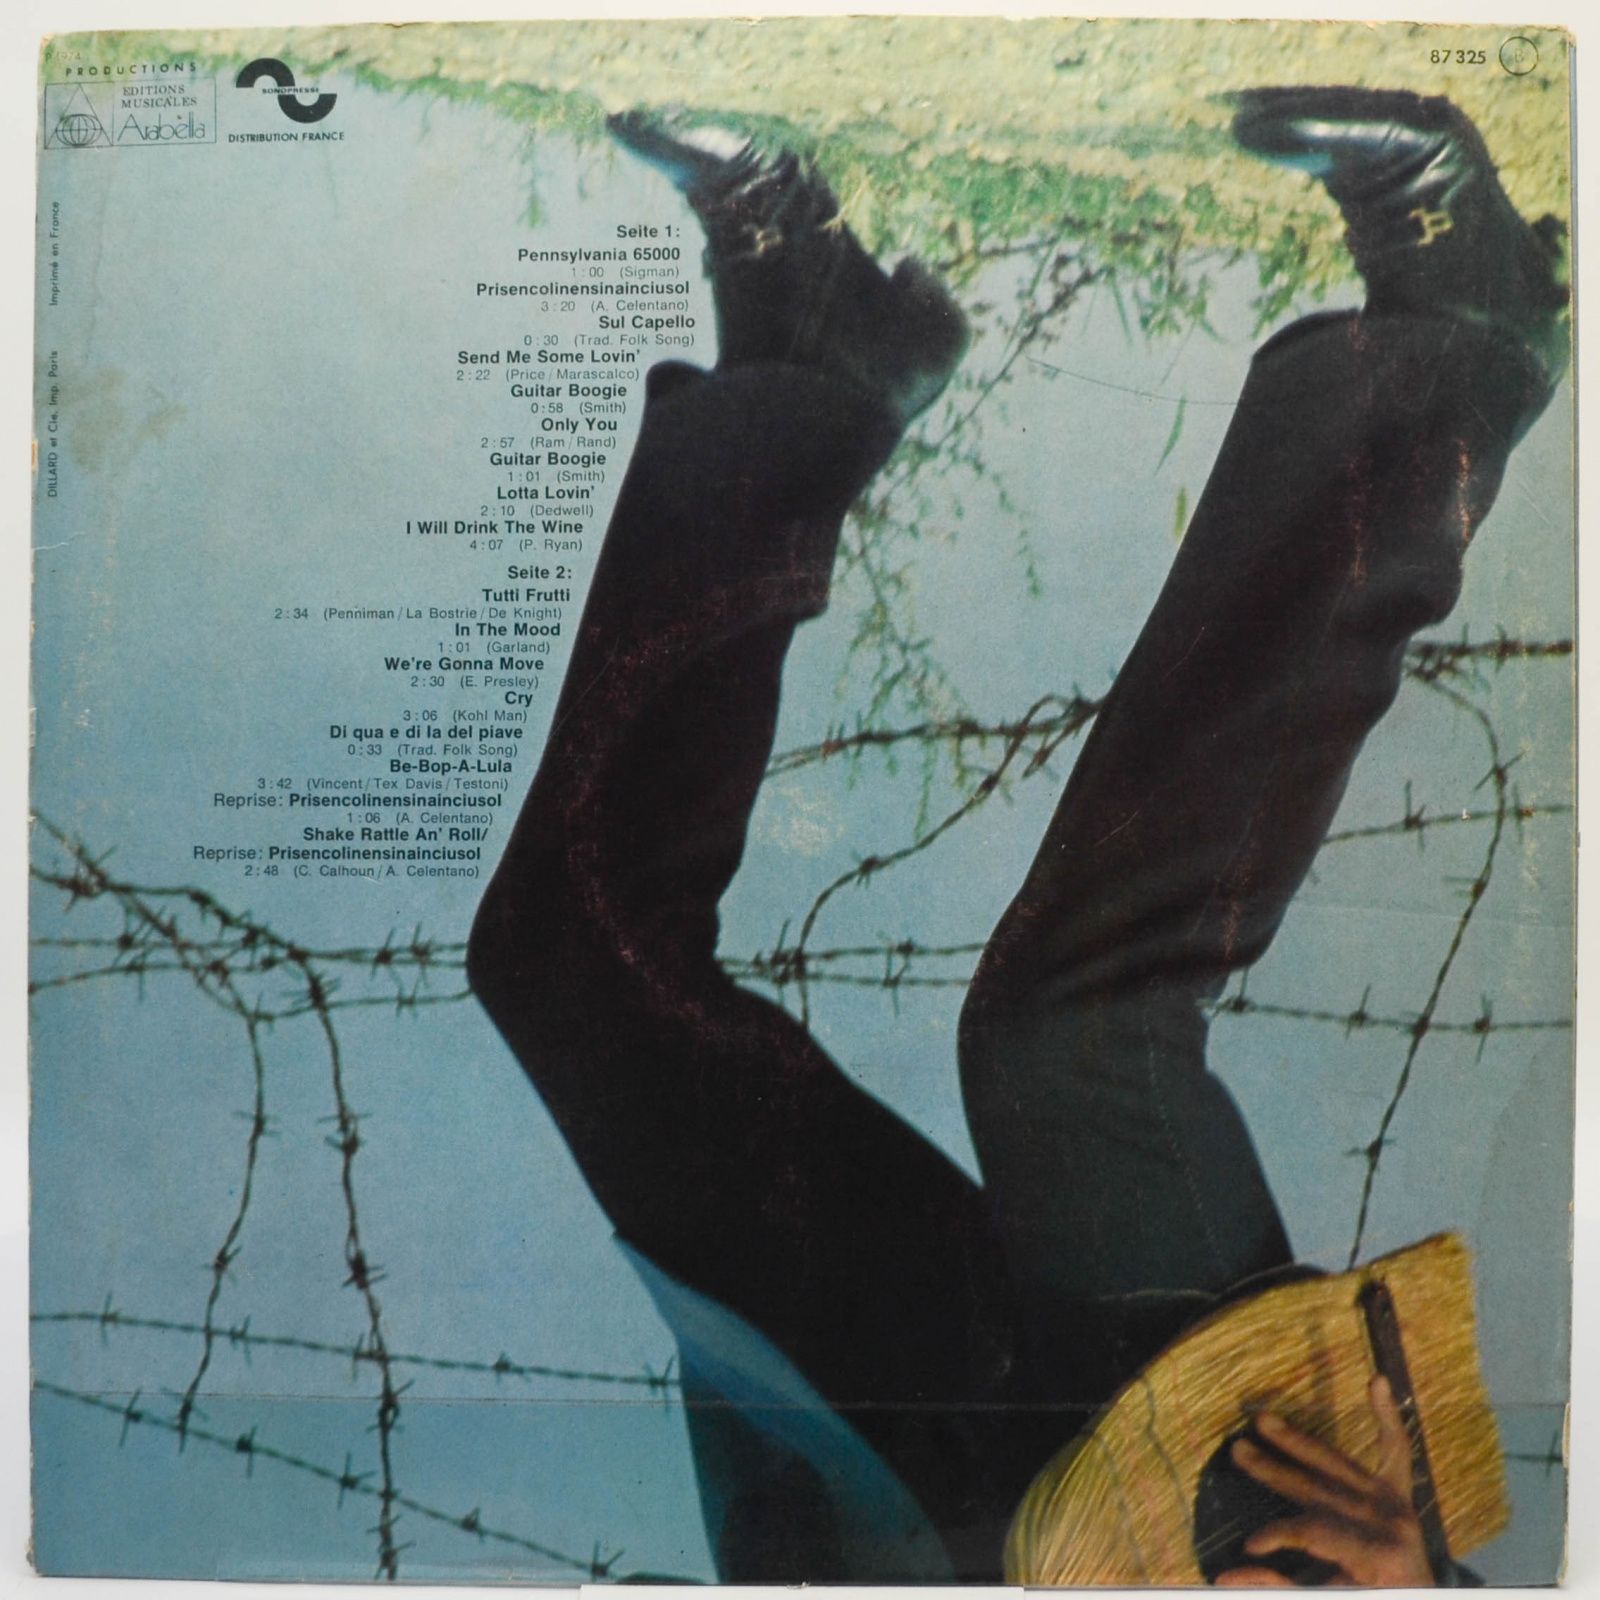 Adriano Celentano — Prisencolinensinainciusol, 1973